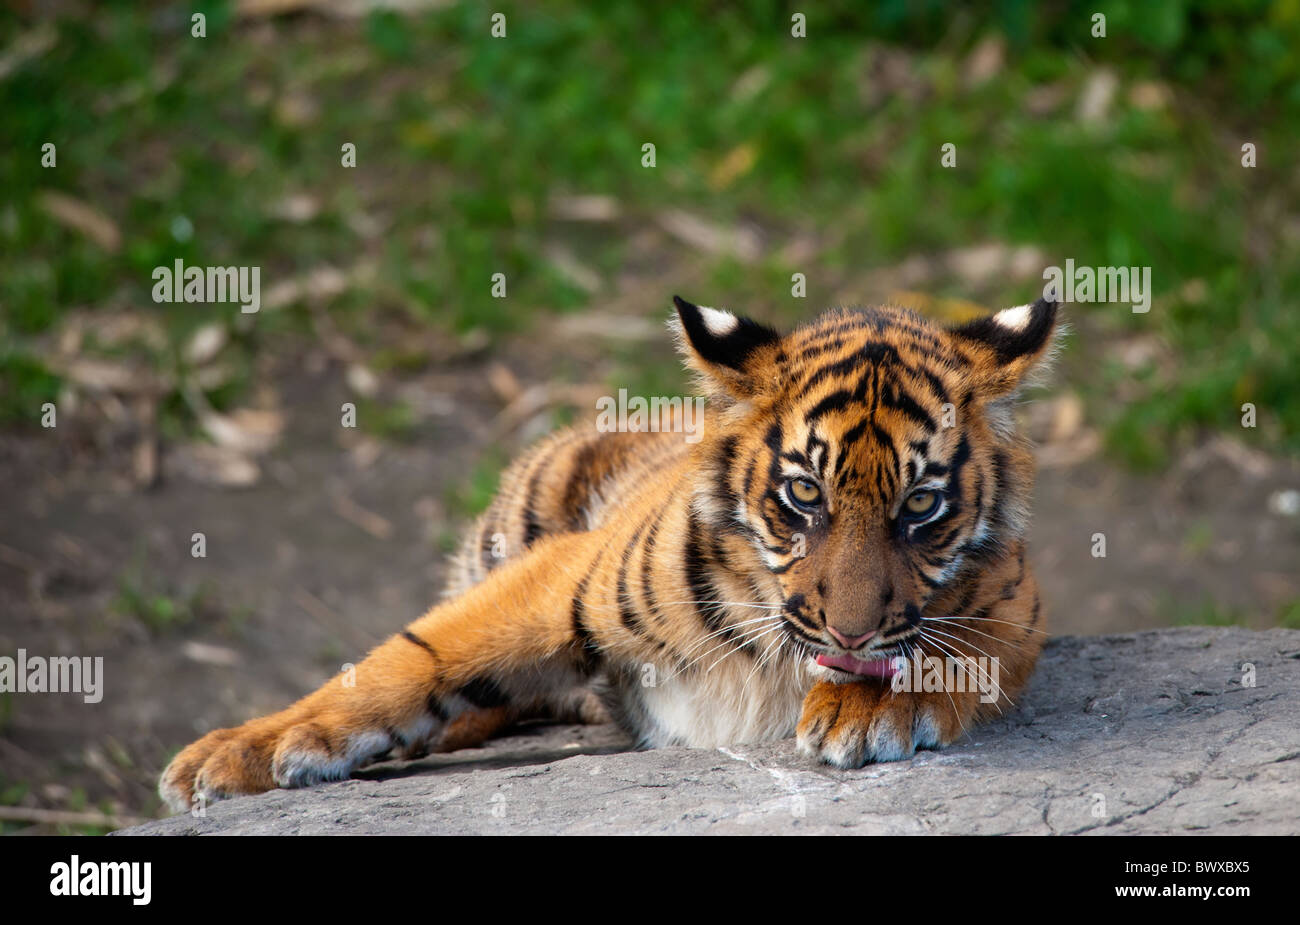 Tigre de Sumatra cub regardant la caméra Banque D'Images